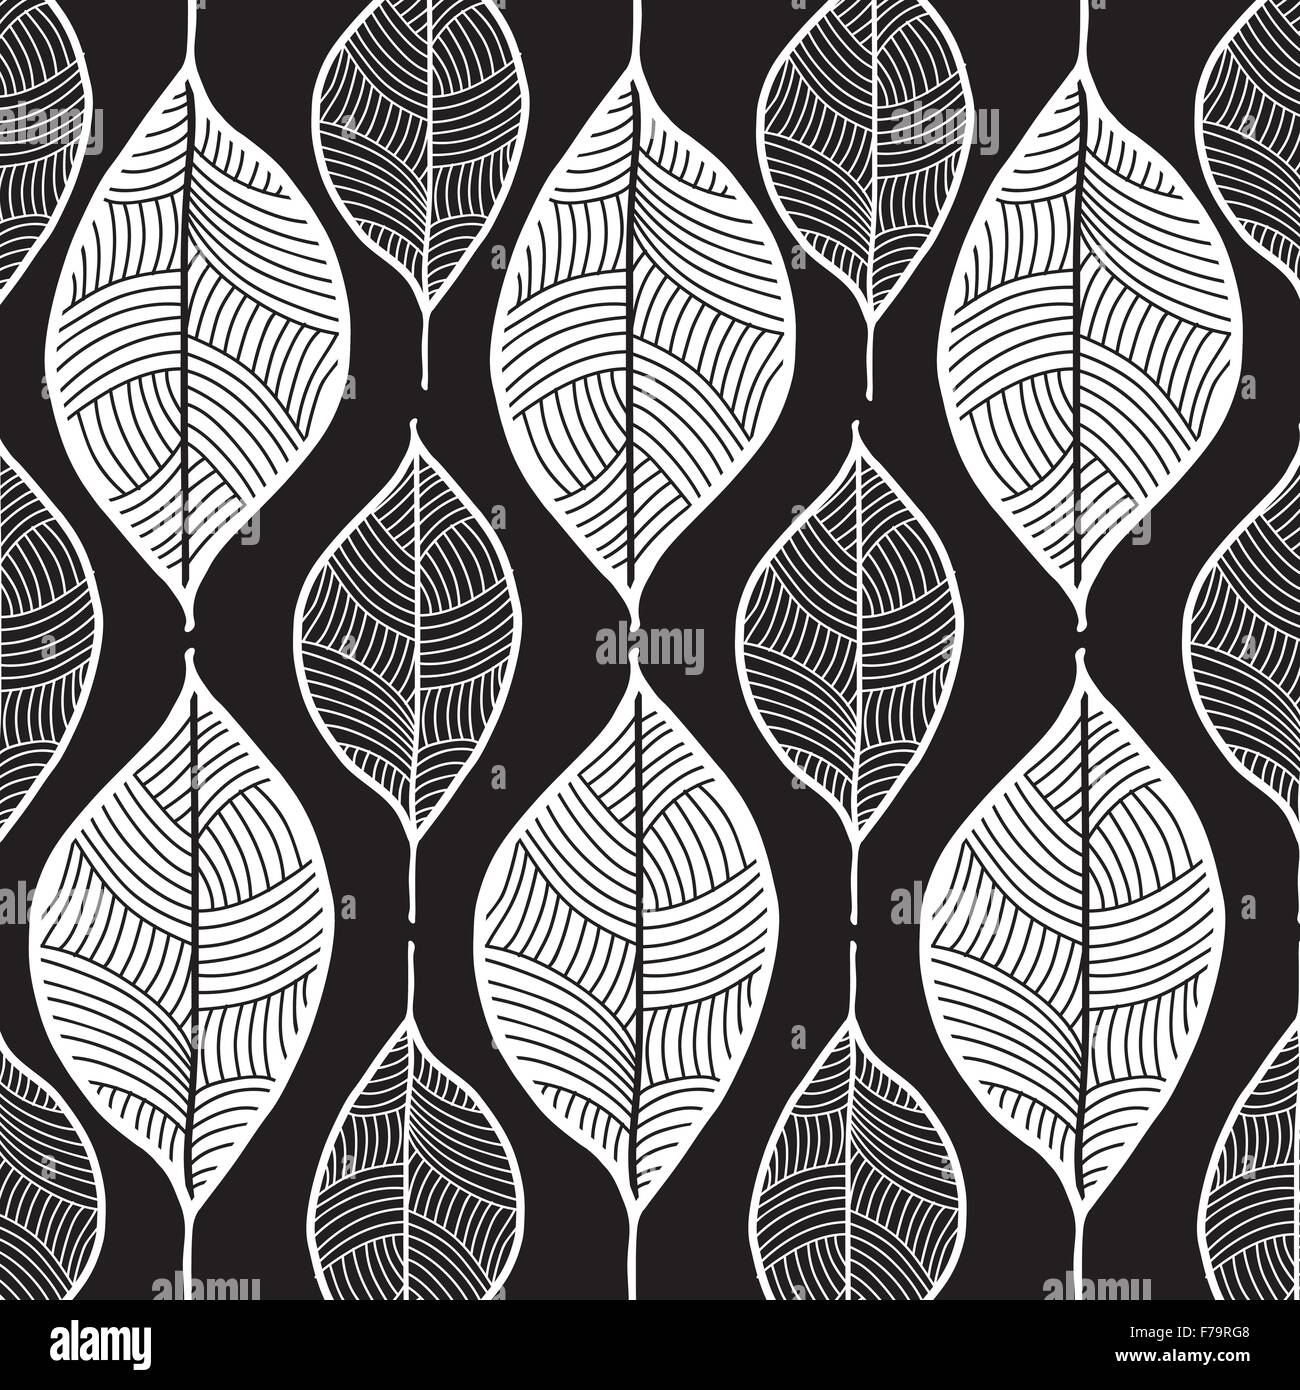 leaf pattern hand drawn sketch doodle illustration white on black background Stock Vector